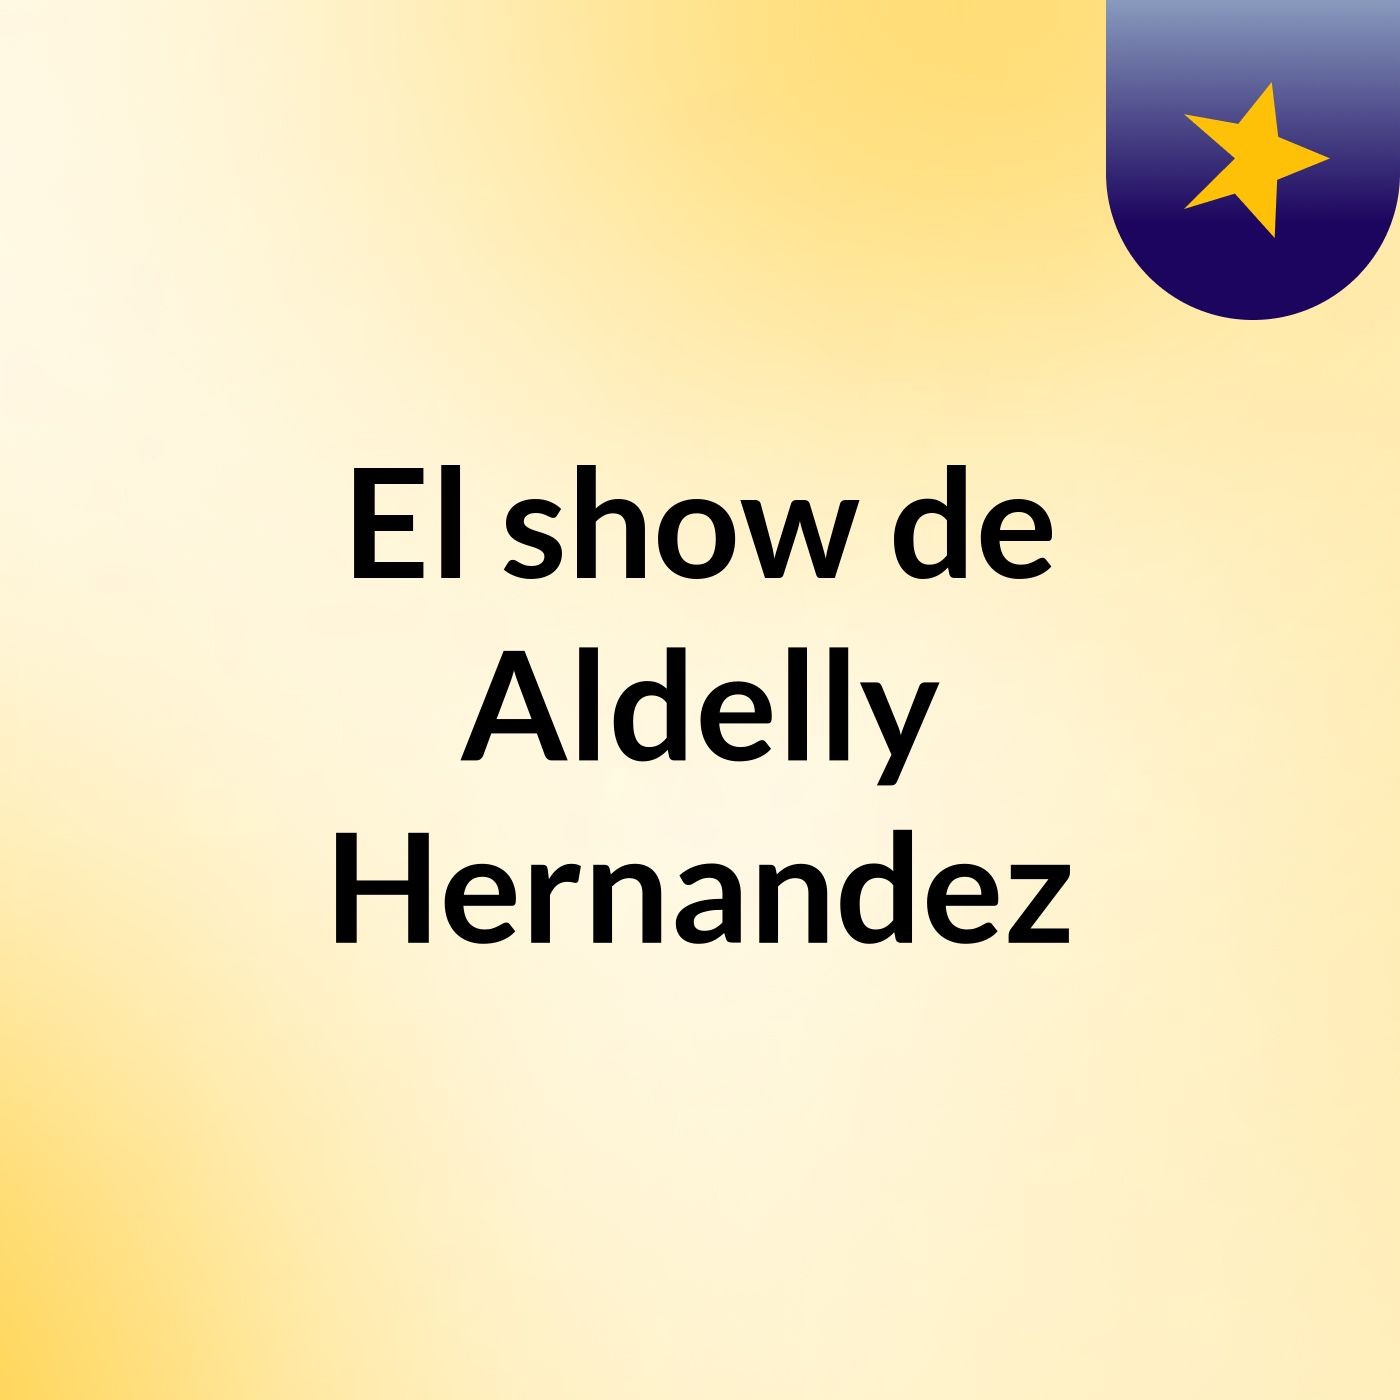 El show de Aldelly Hernandez